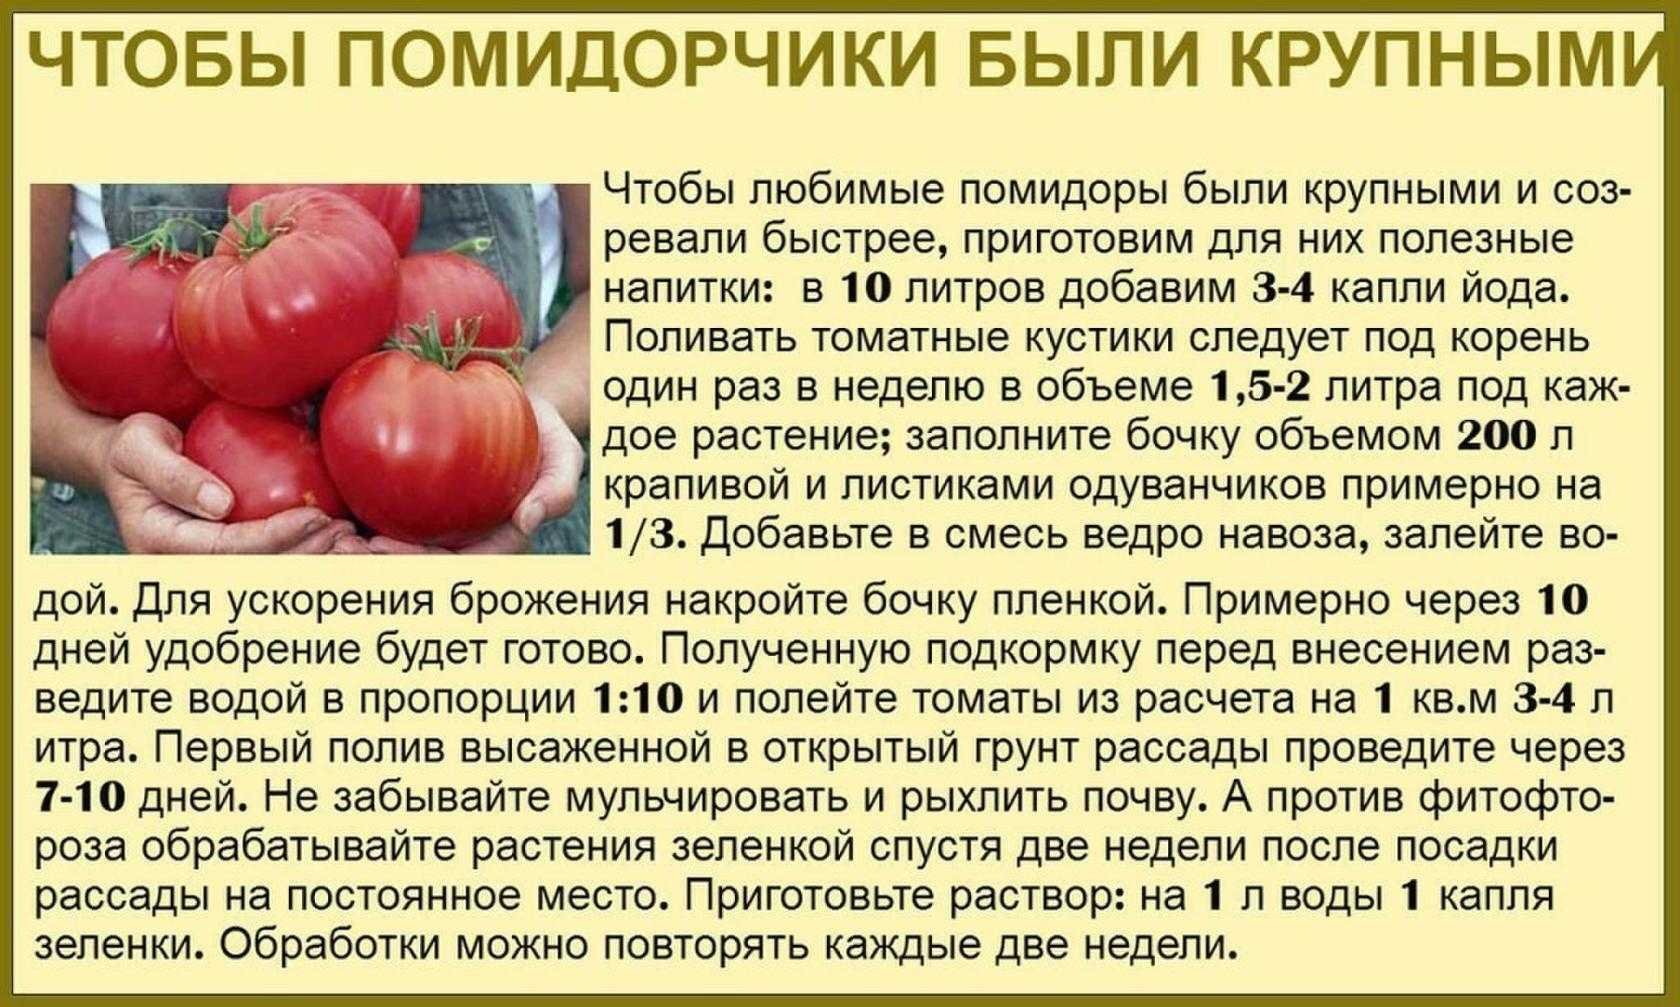 Сколько гр помидор. Таблица подкормки томатов. Советы садоводам и огородникам. Советы про томаты. Сад огород полезные советы томаты.